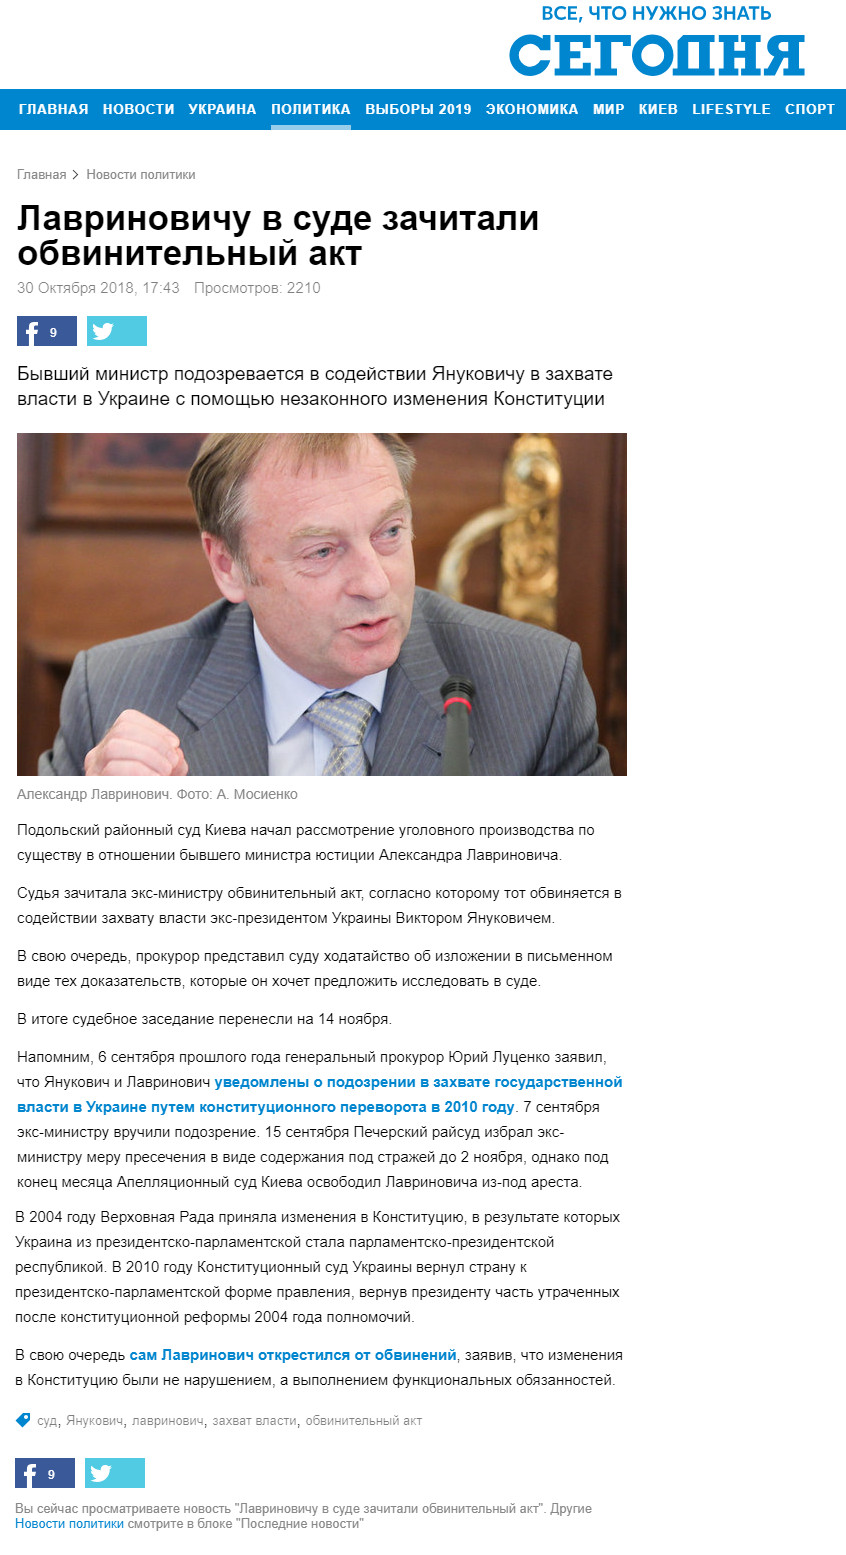 https://www.segodnya.ua/politics/lavrinovichu-v-sude-zachitali-obvinitelnyy-akt-1184208.html